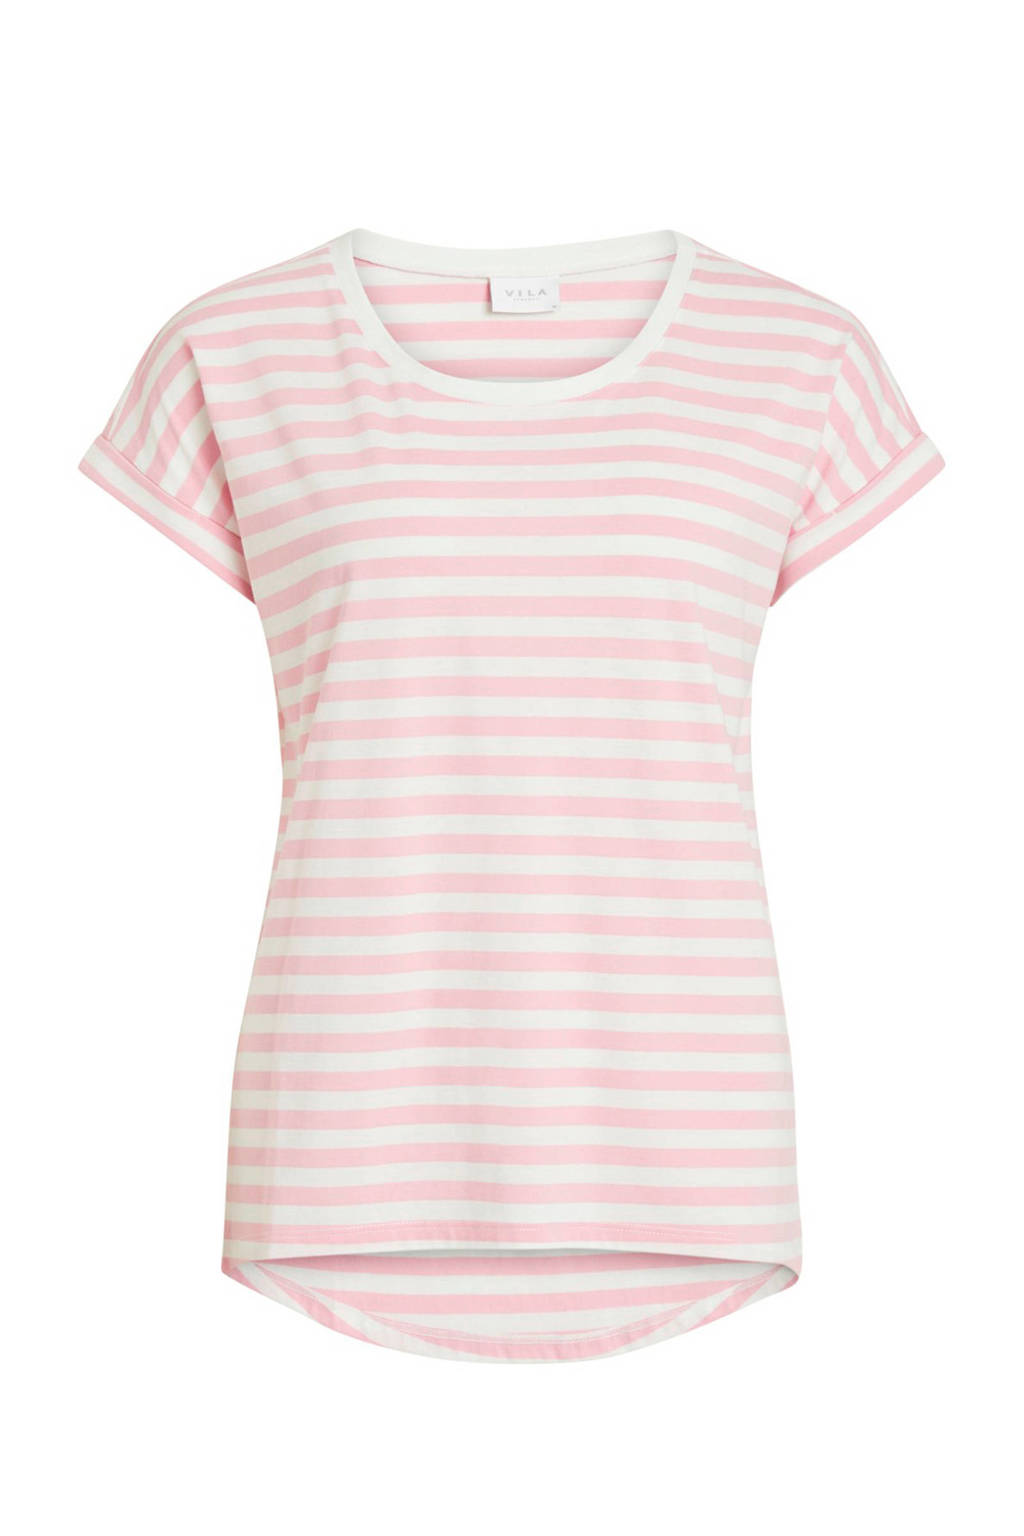 Ongekend VILA gestreept T-shirt roze/wit | wehkamp BO-42